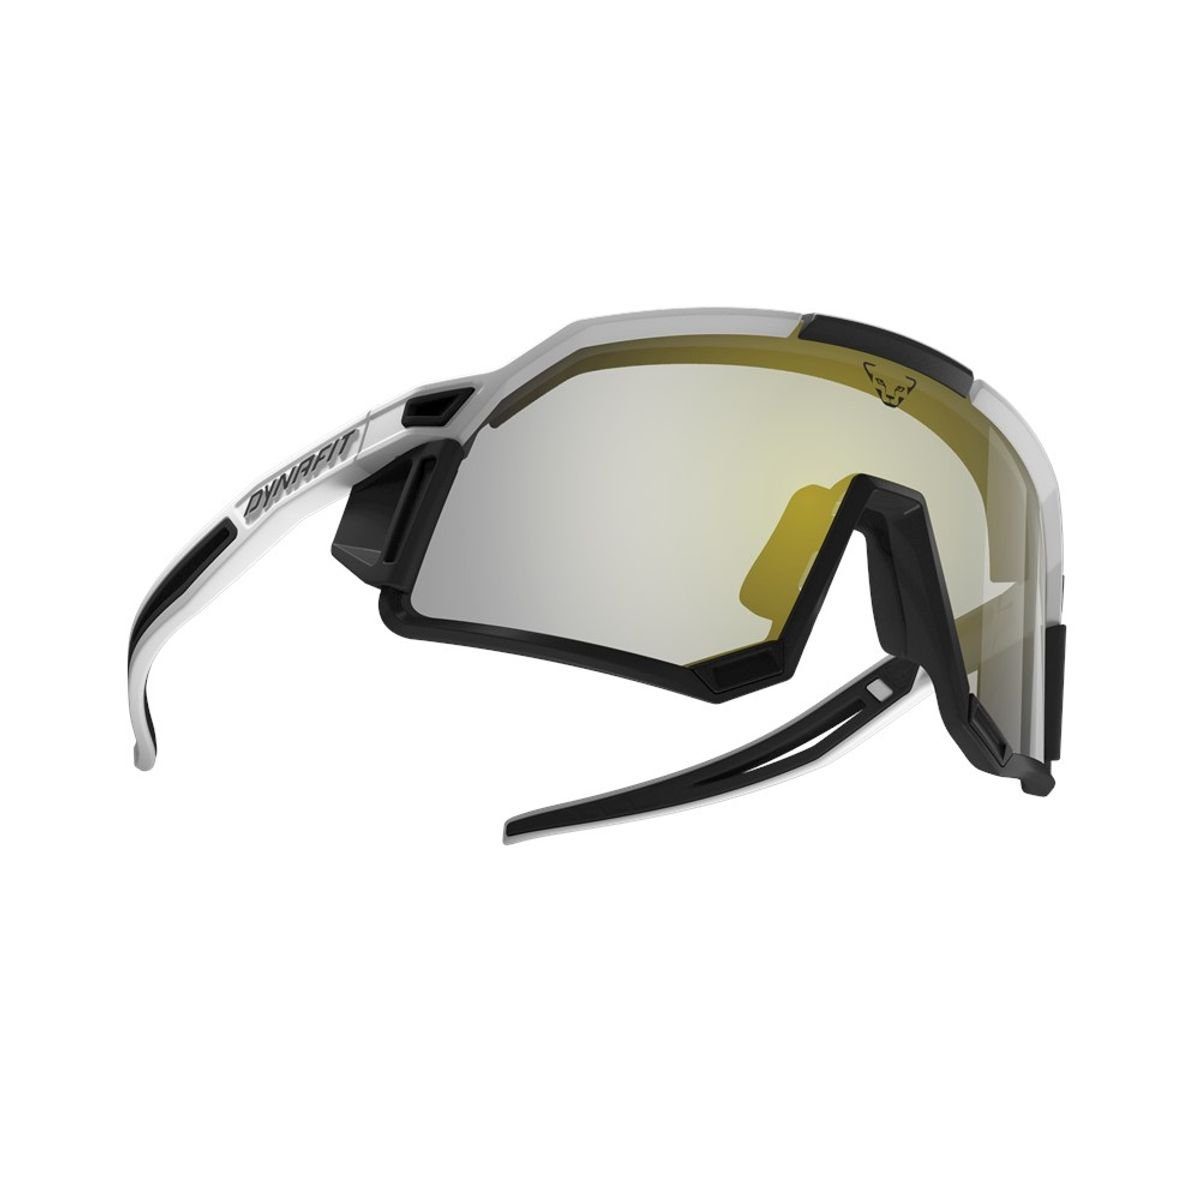 Dynafit Sportbrille Sky Pro Sunglasses - Dynafit, 910 Blackout/White Cat 2-4, 1 Uni